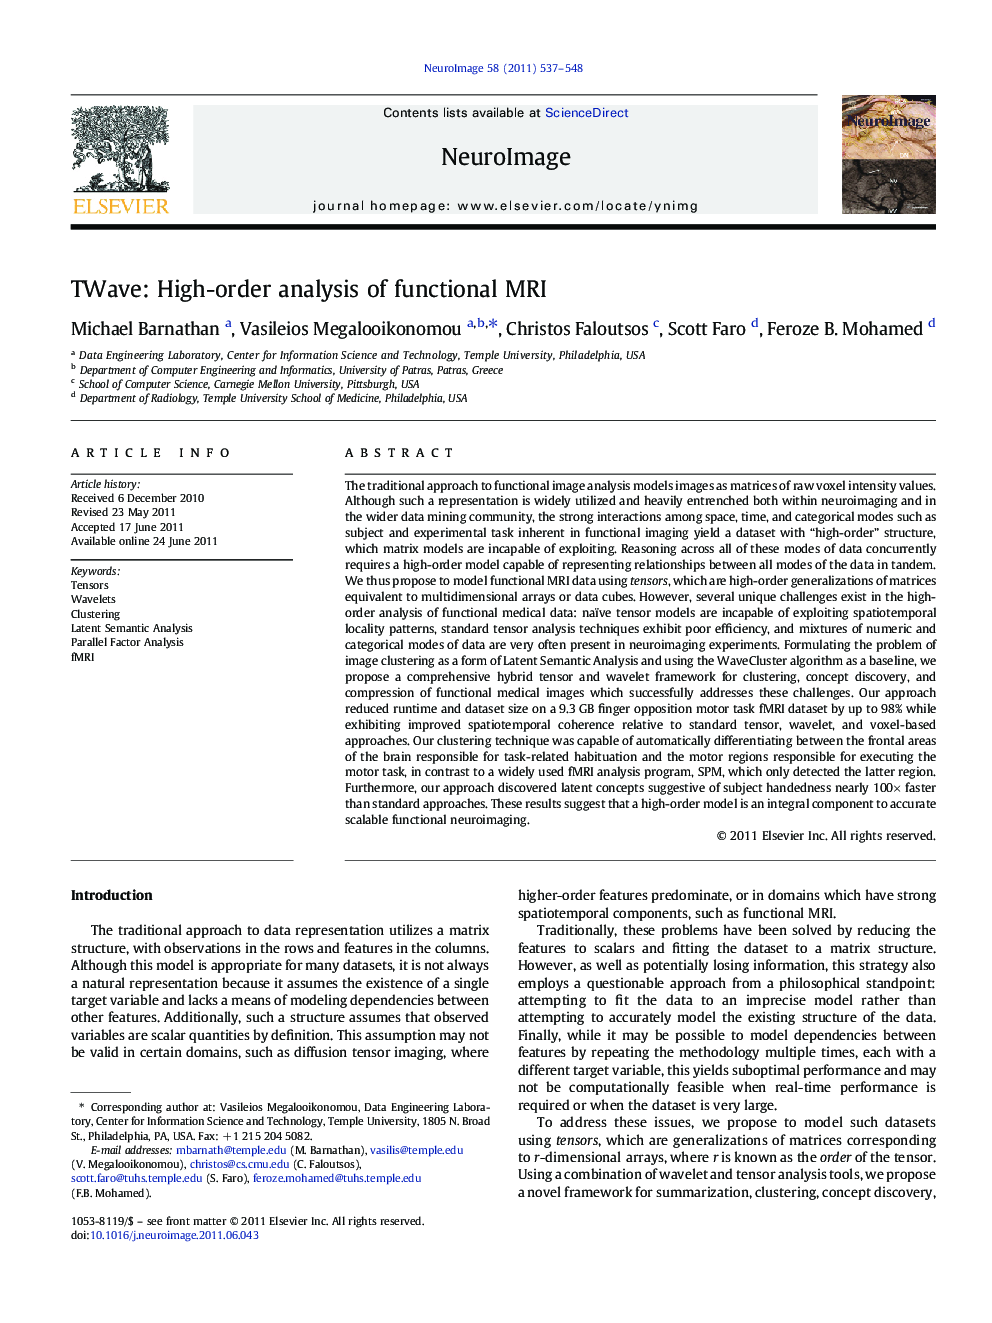 TWave: High-order analysis of functional MRI